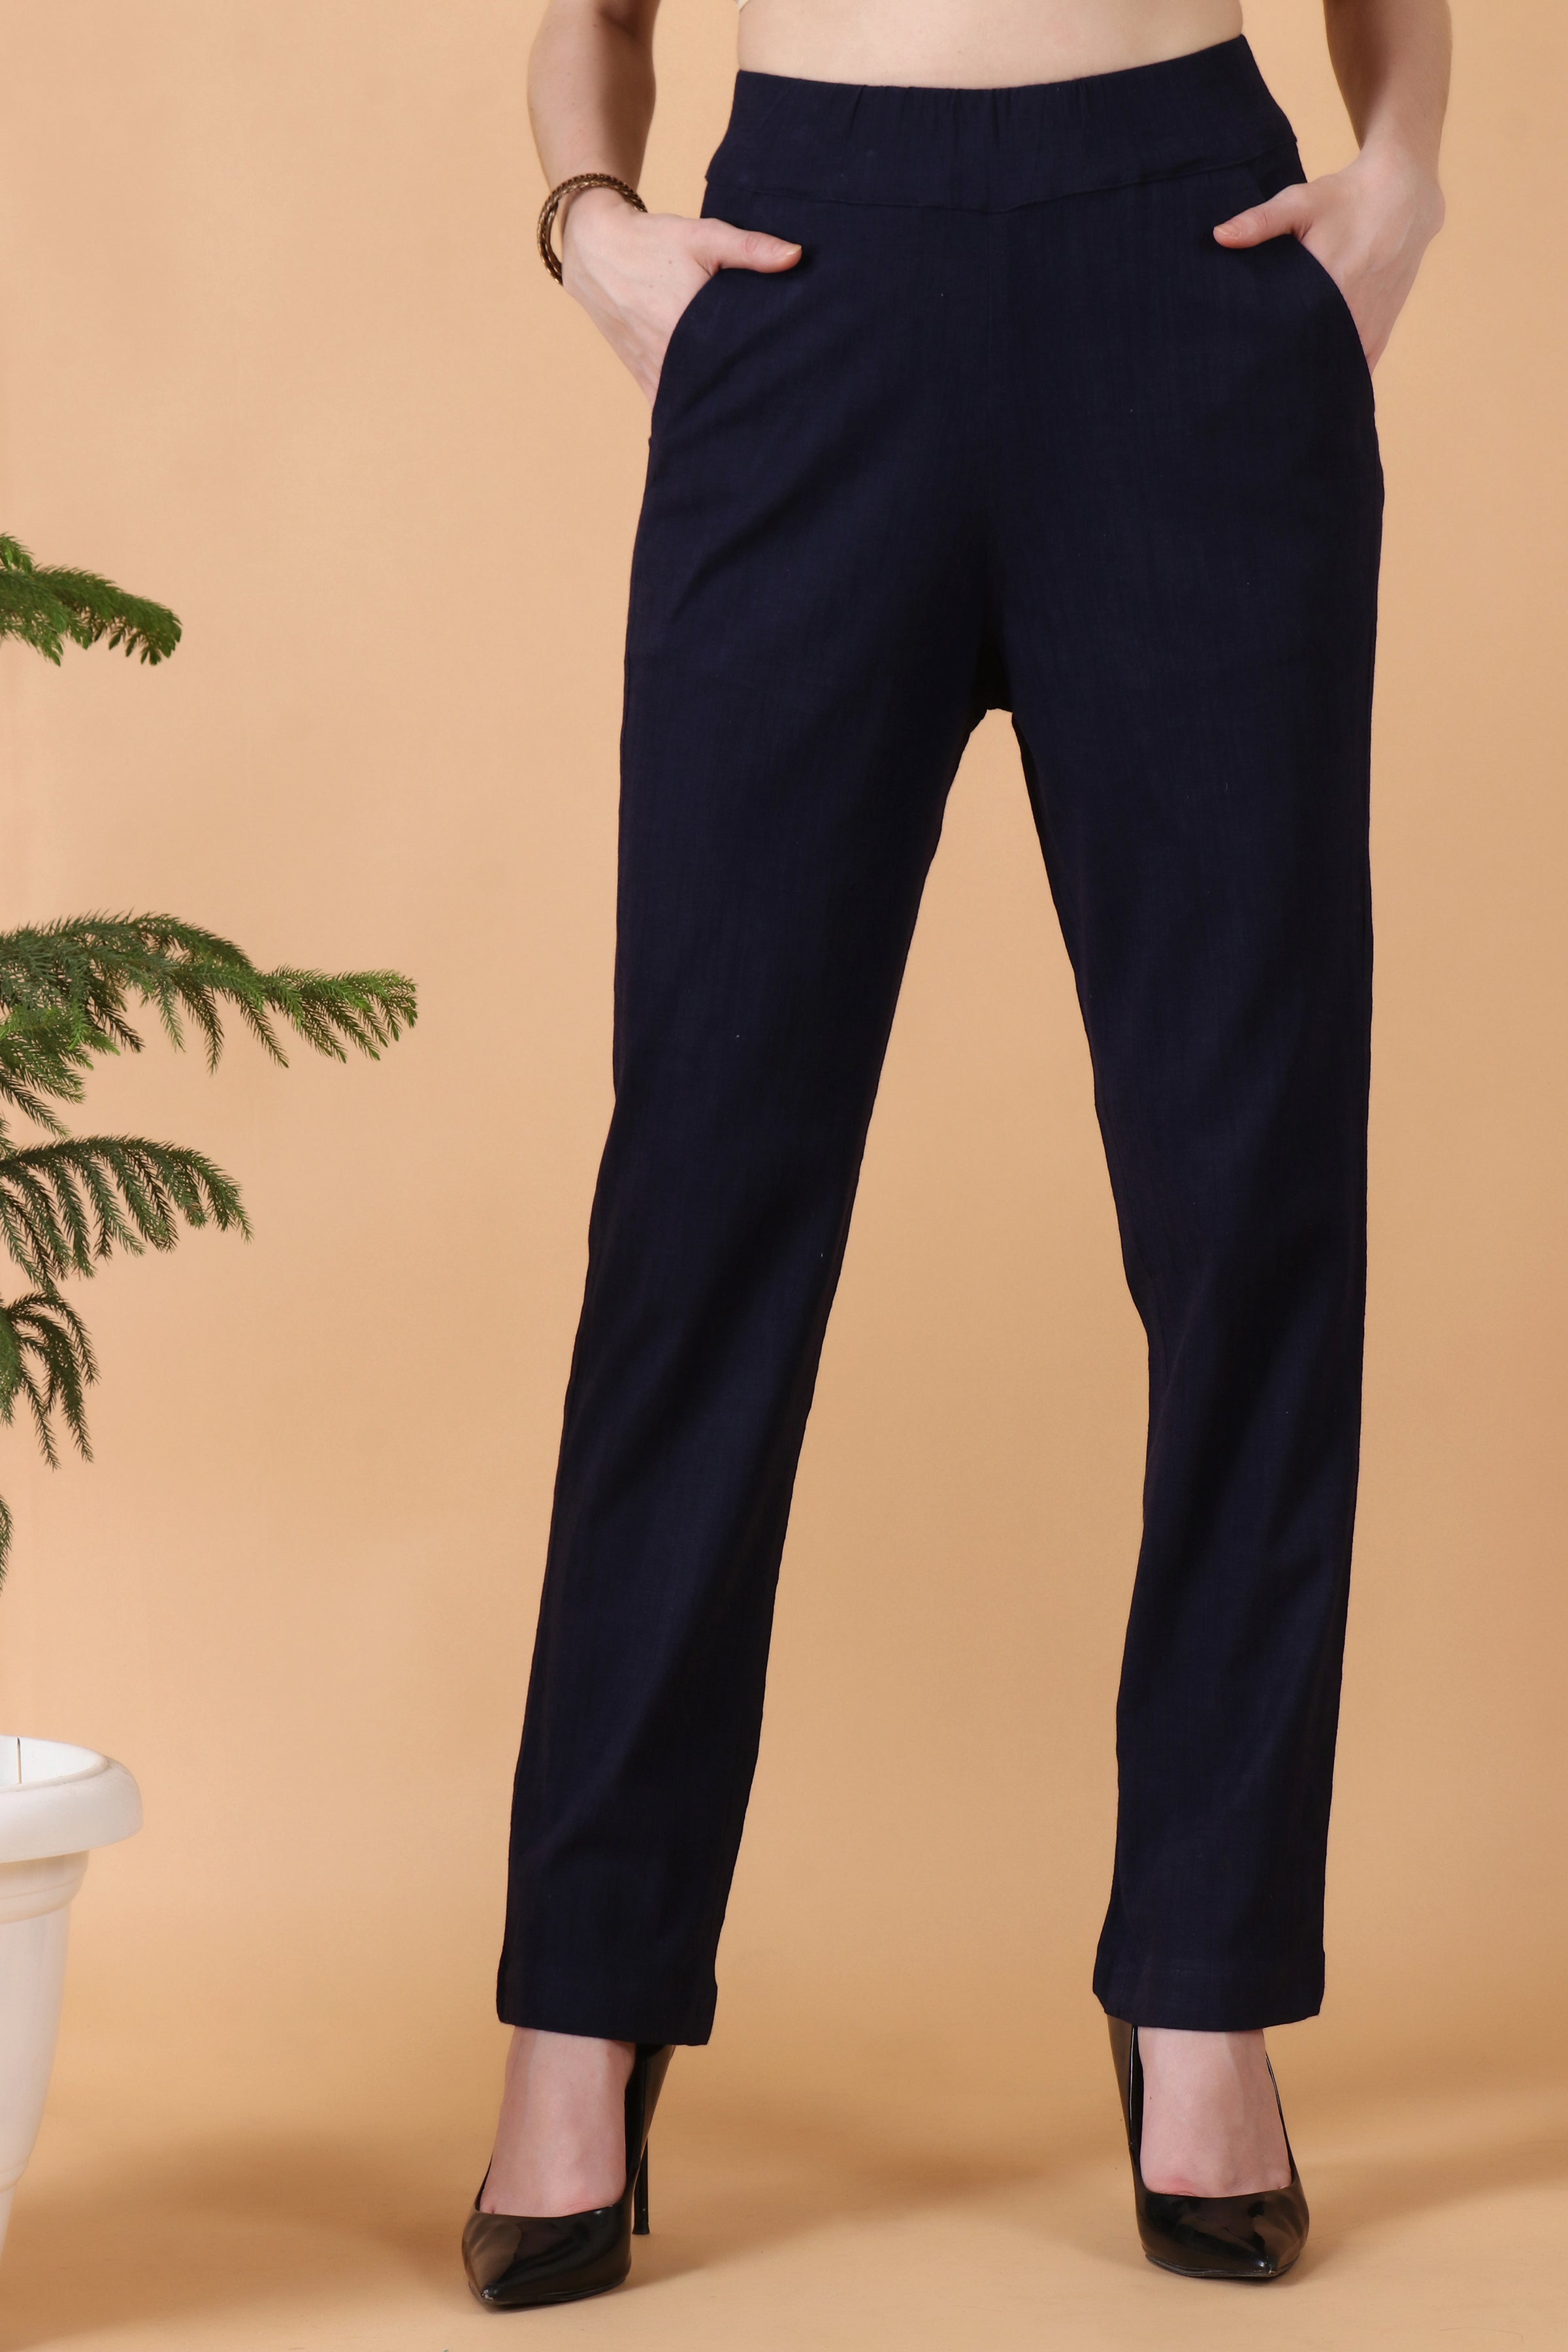 NA SALES INDIA Boys School Uniform Pleated Adjustable Waist Twill Casual  Pants